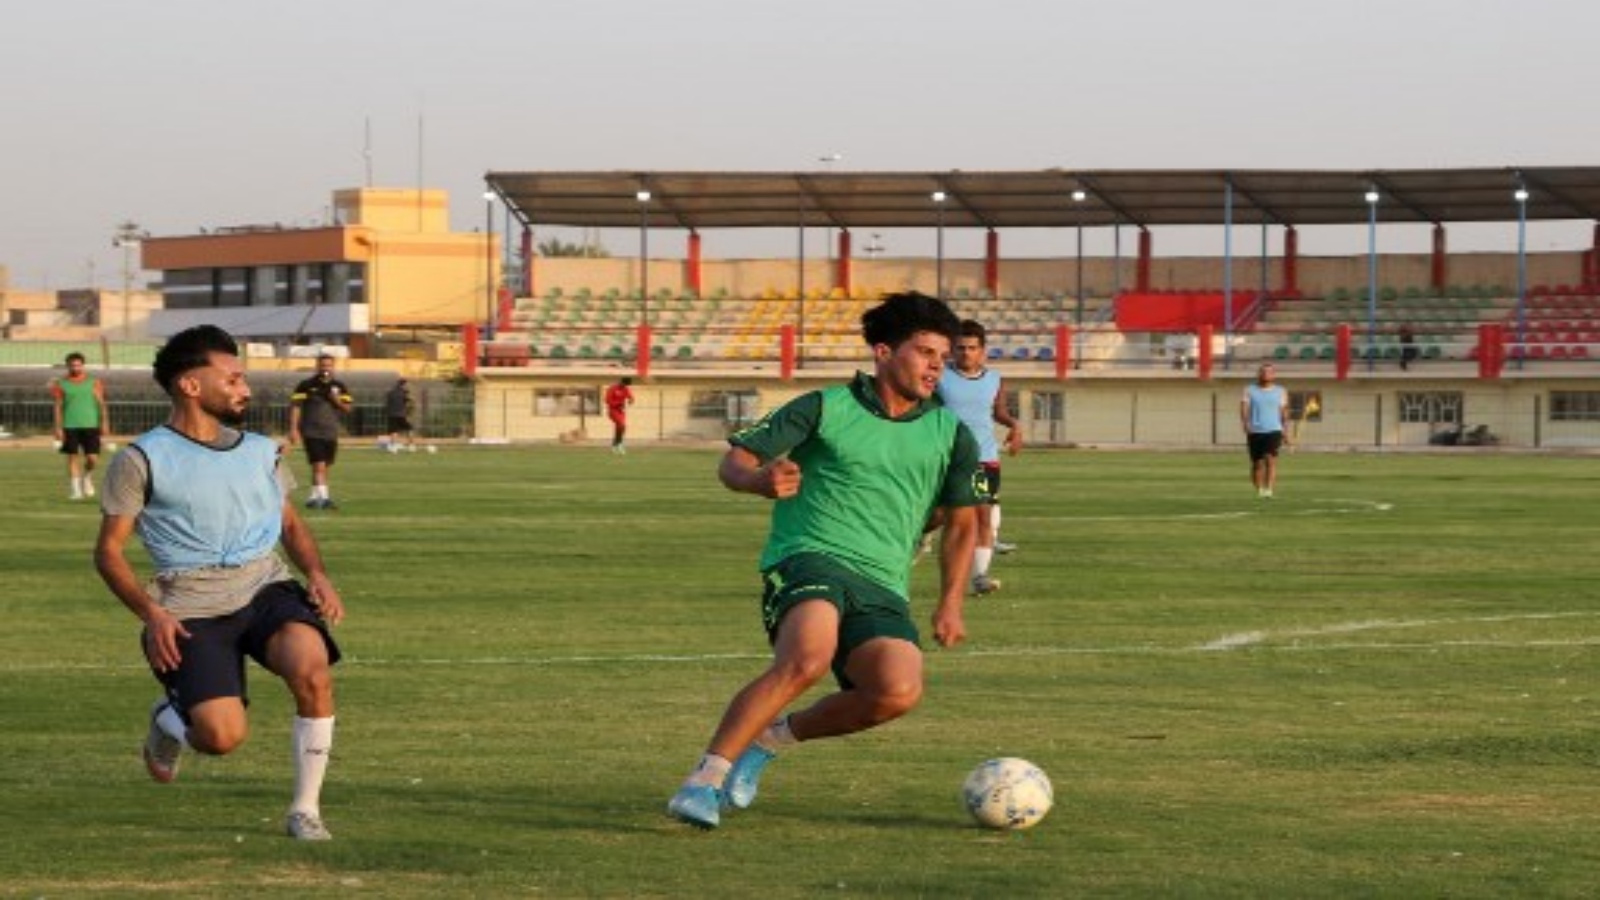 لاعبو نادي الديوانية العراقي يشاركون في جلسة تدريبية في ملعب النادي يوم 14 سبتمبر 2020 في مدينة الديوانية جنوب العراق